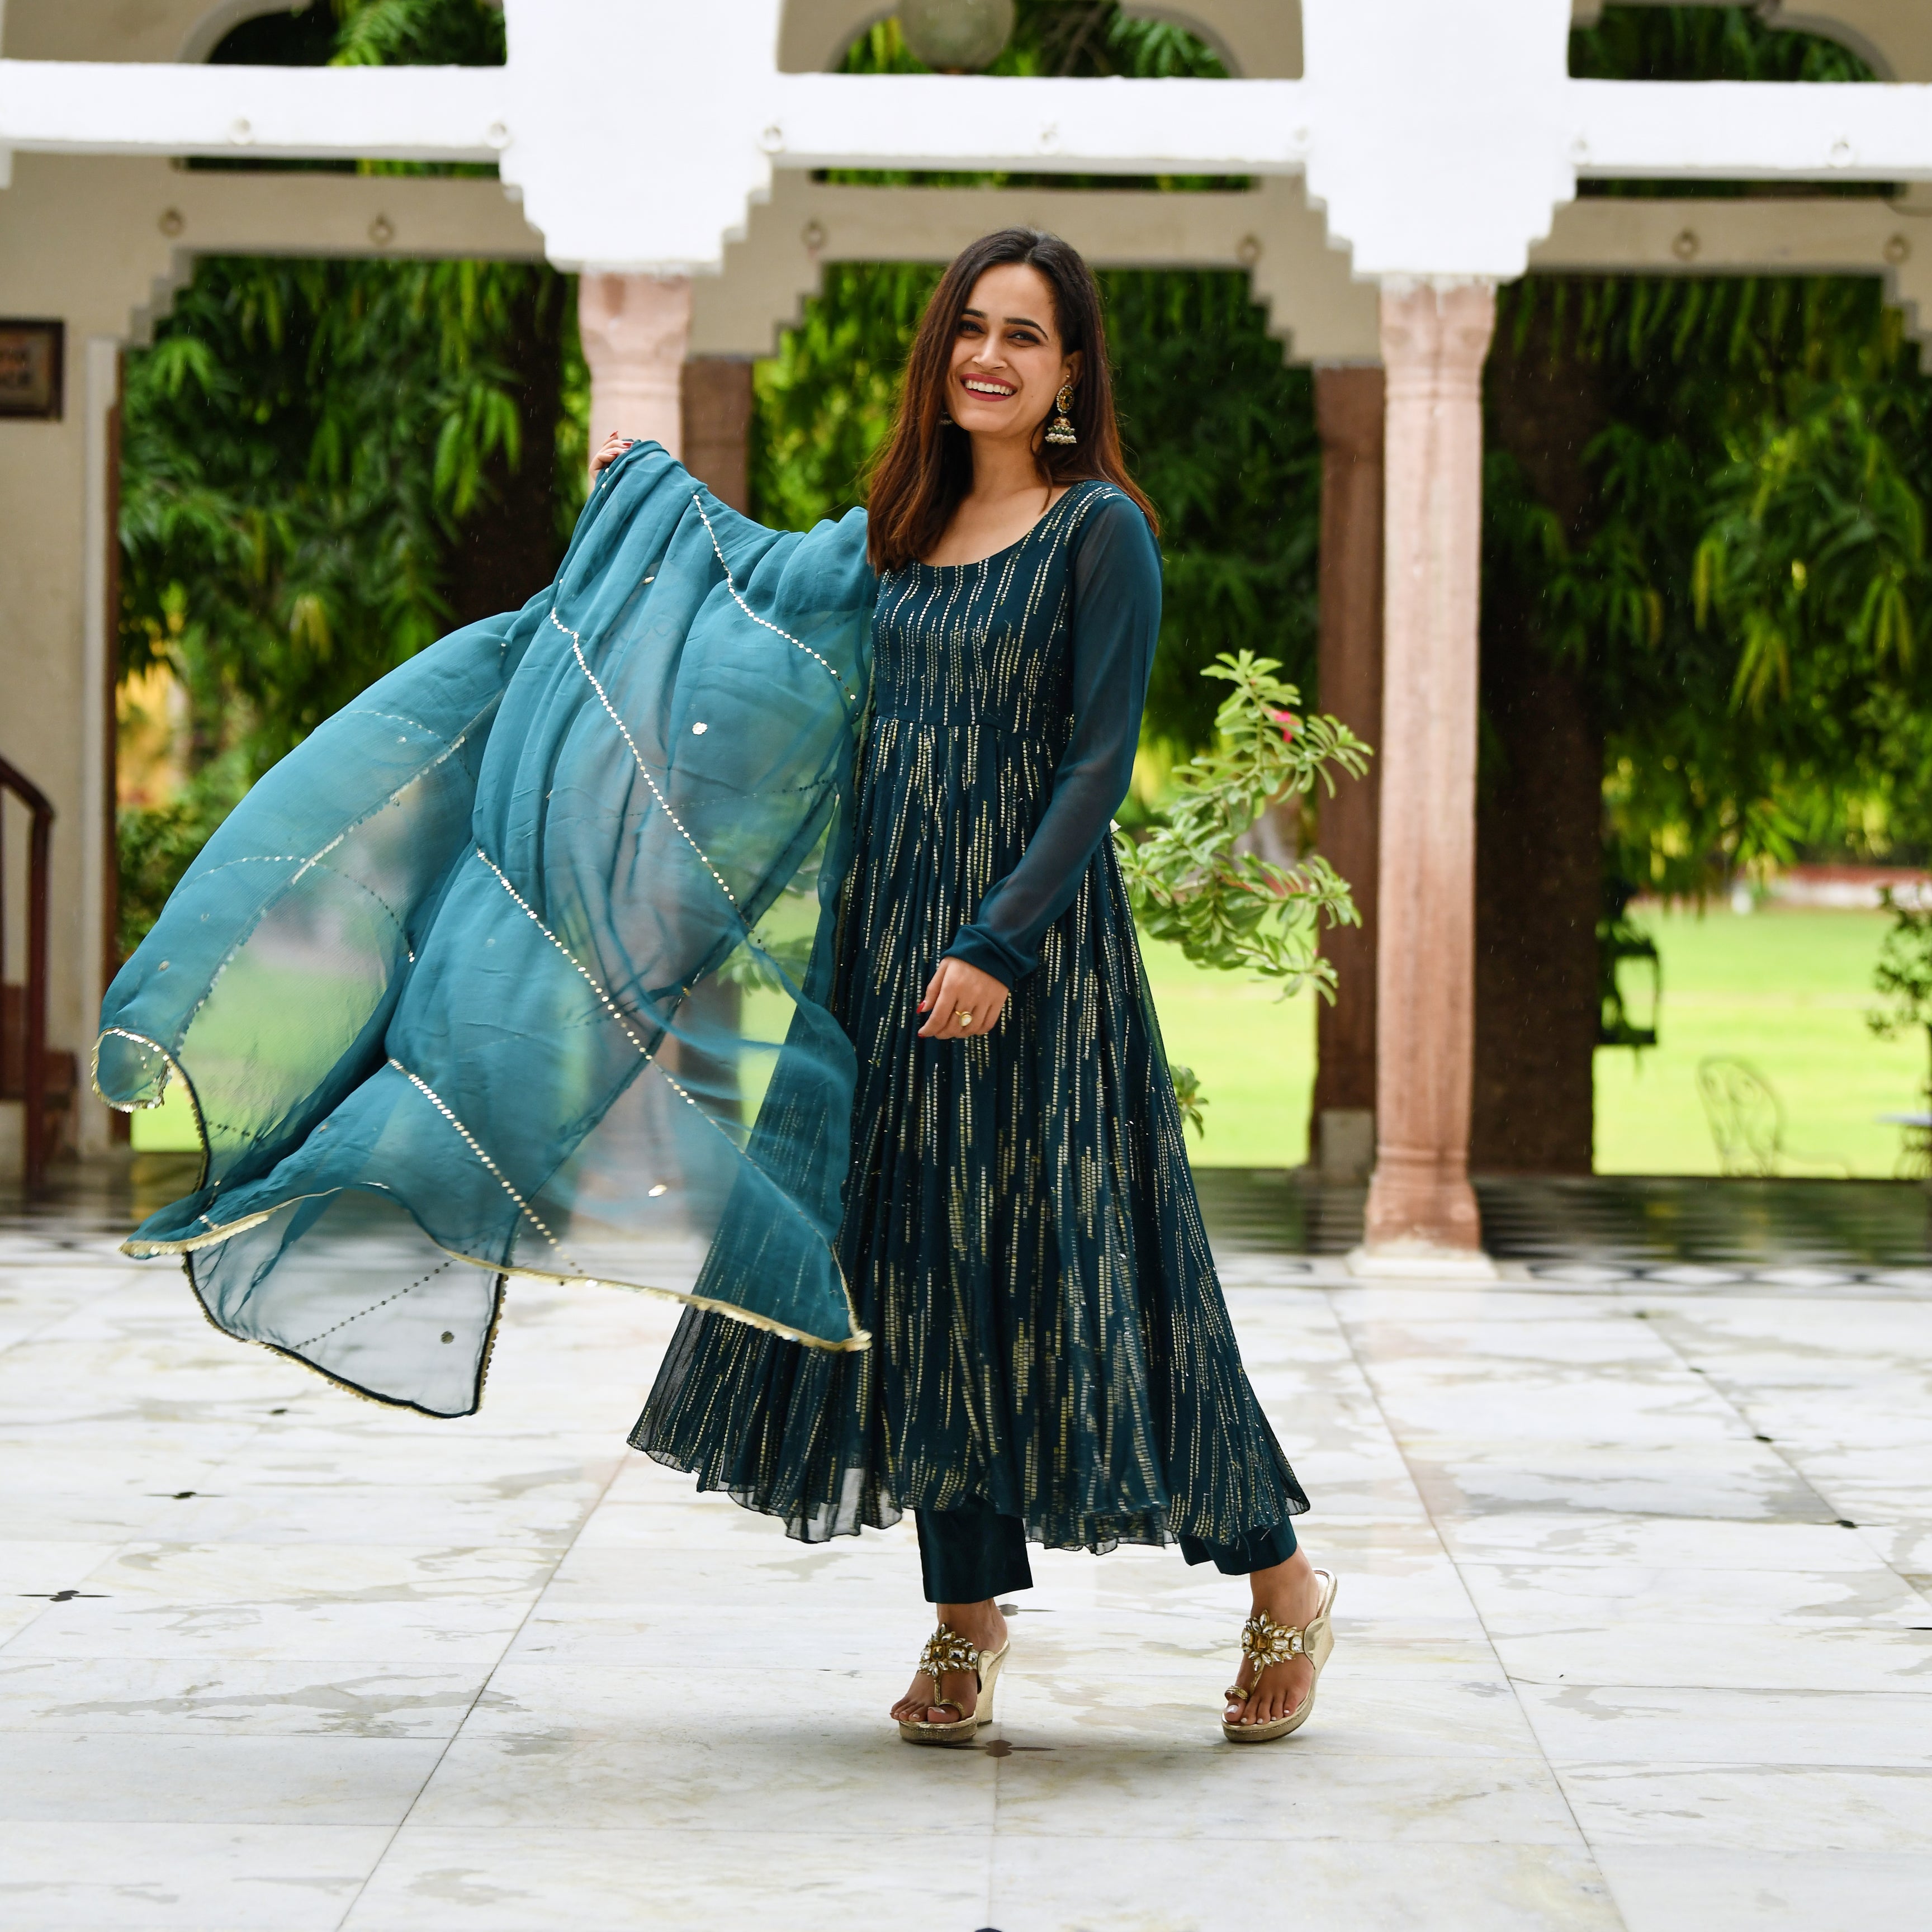 Rashmi Teal Blue Designer Anarkali Suit Set for Women Online